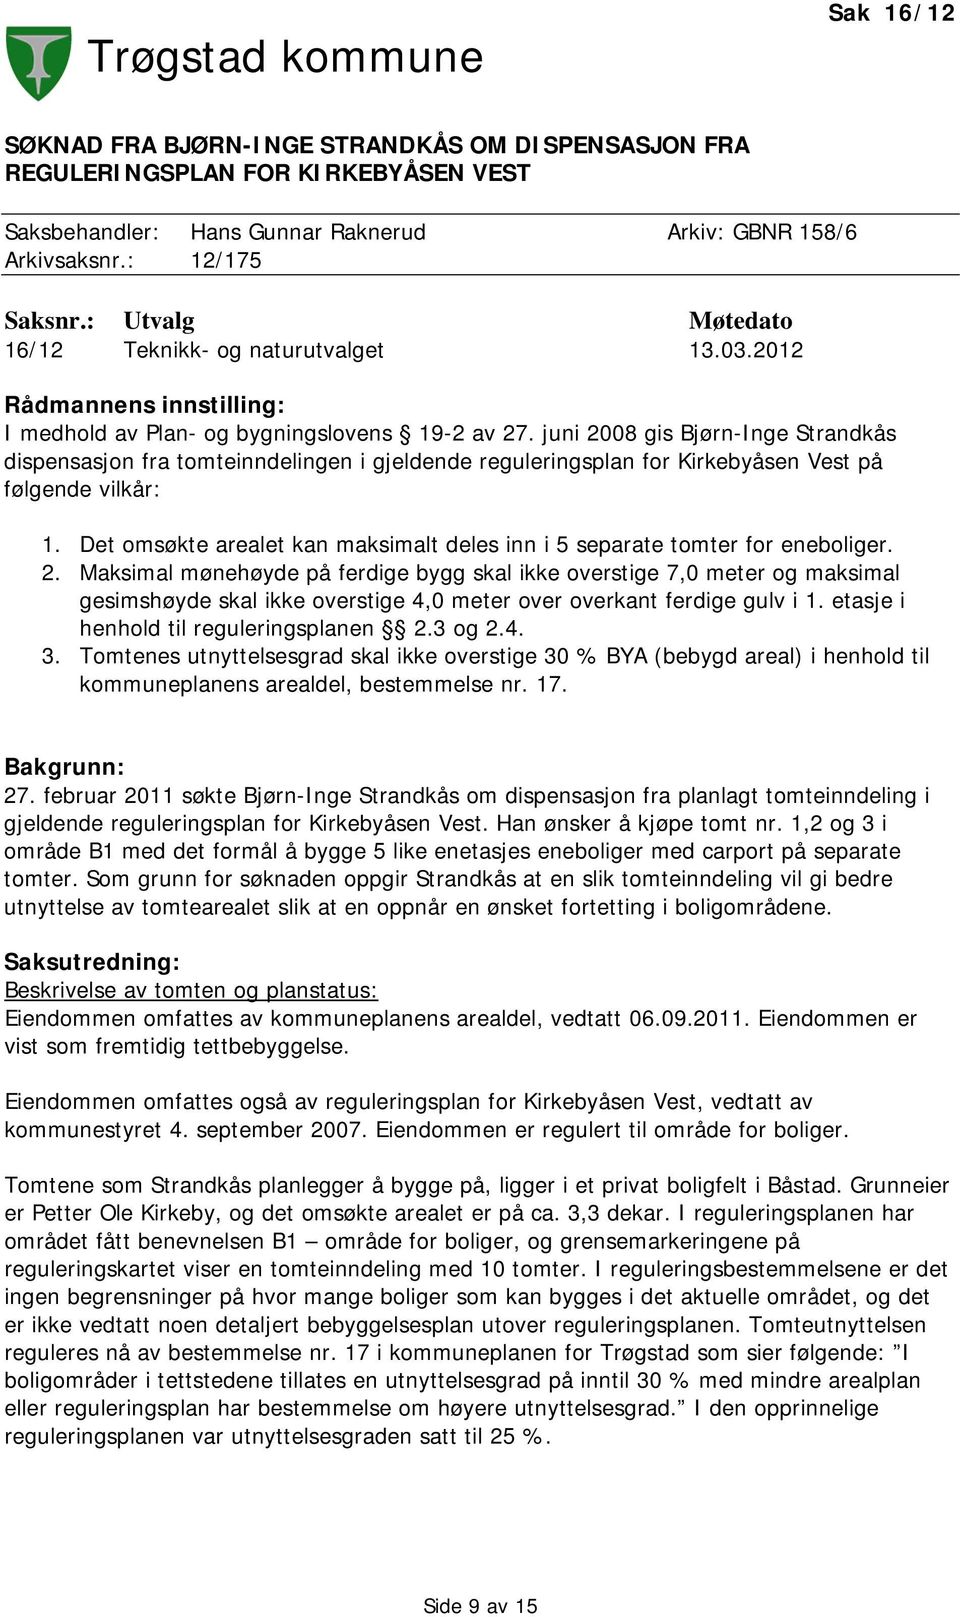 juni 2008 gis Bjørn-Inge Strandkås dispensasjon fra tomteinndelingen i gjeldende reguleringsplan for Kirkebyåsen Vest på følgende vilkår: 1.